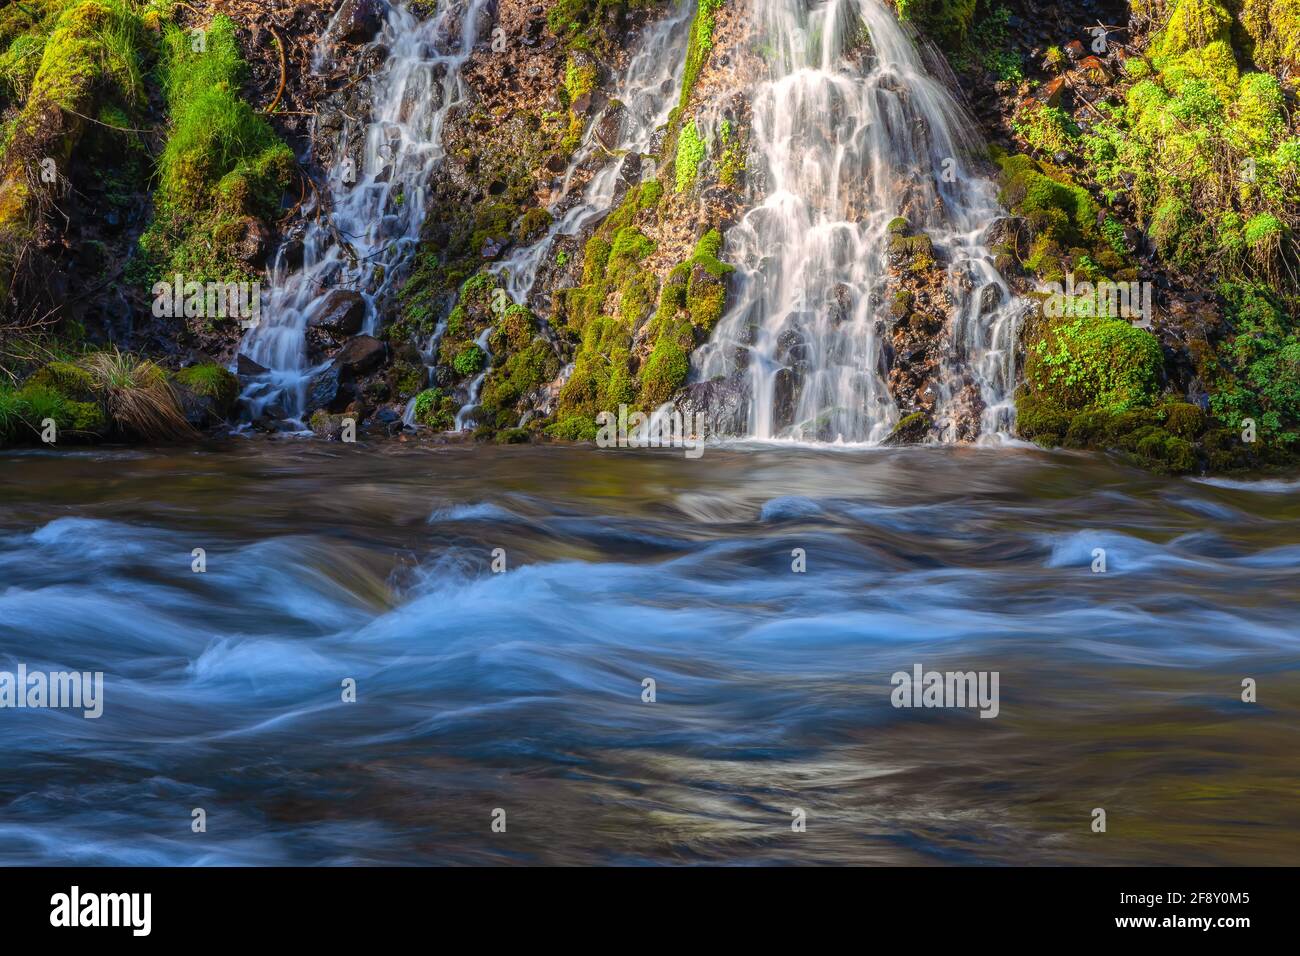 Pequeñas cascadas en el Burney Creek en el Parque Estatal Burney Falls, Condado de Shasta, California, Estados Unidos. Foto de stock